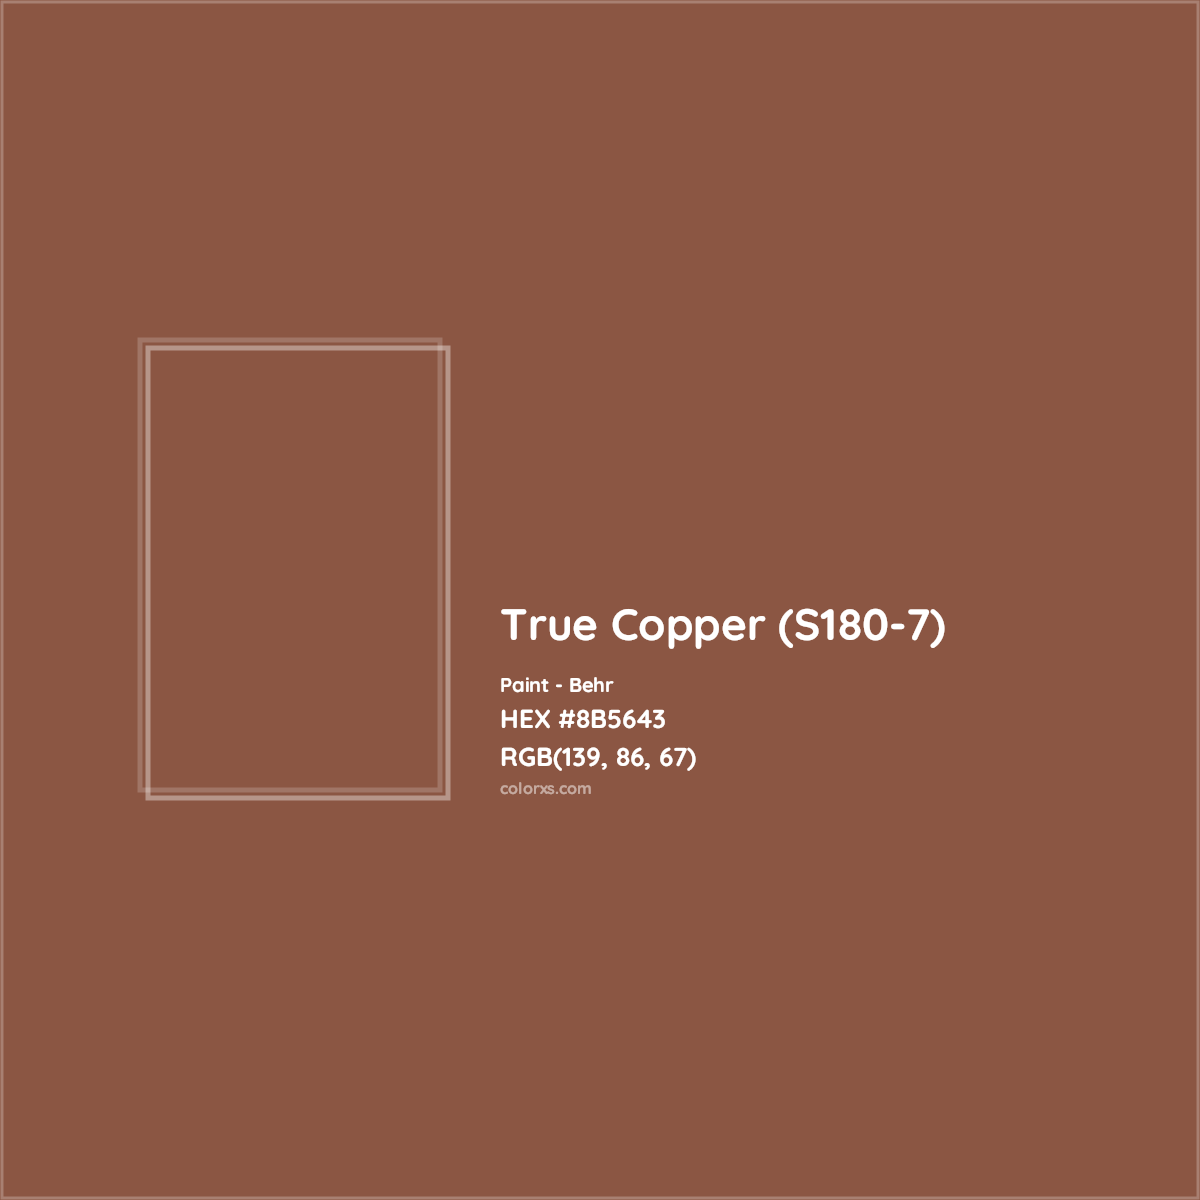 HEX #8B5643 True Copper (S180-7) Paint Behr - Color Code